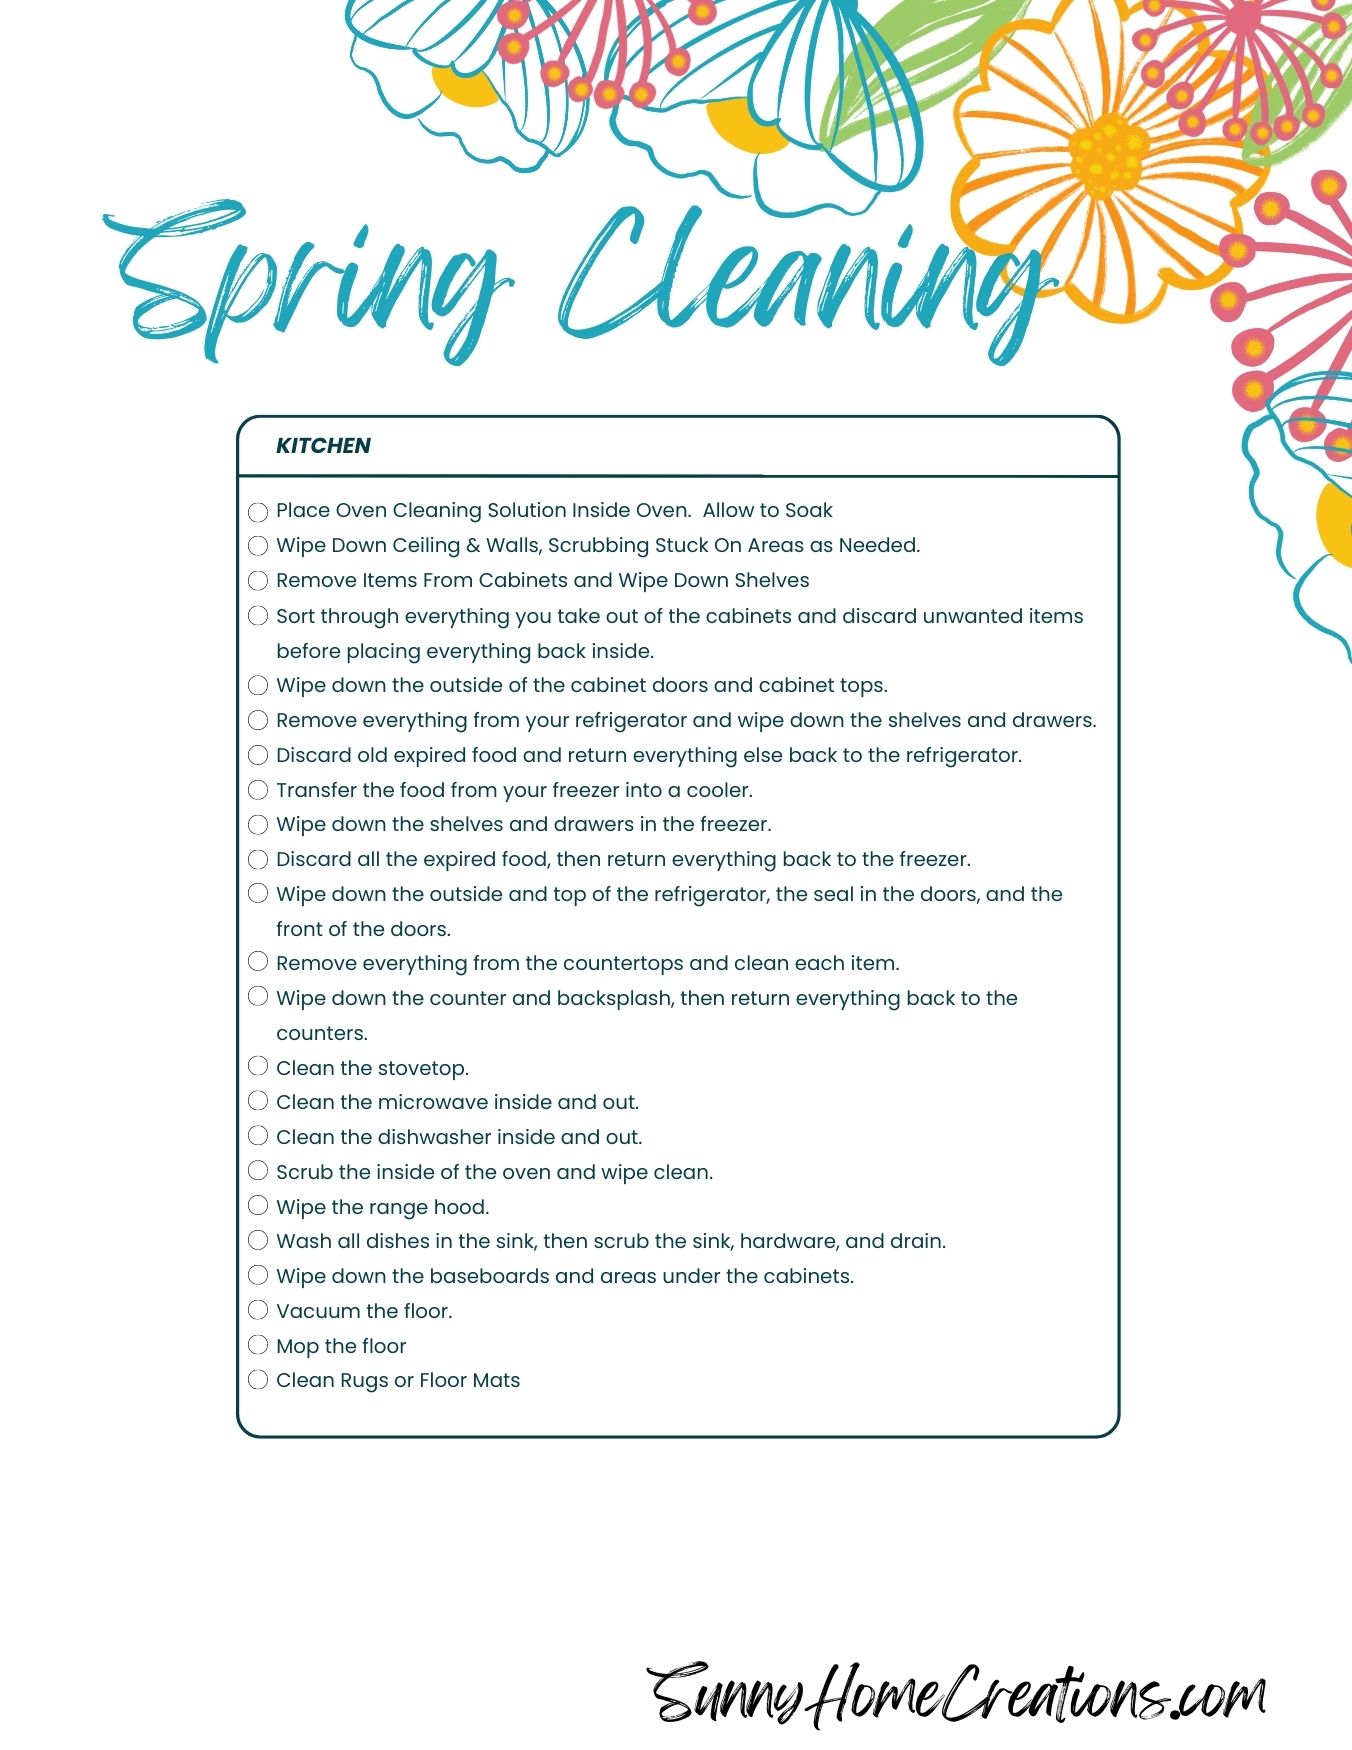 Checklist for spring cleaning ktichen.